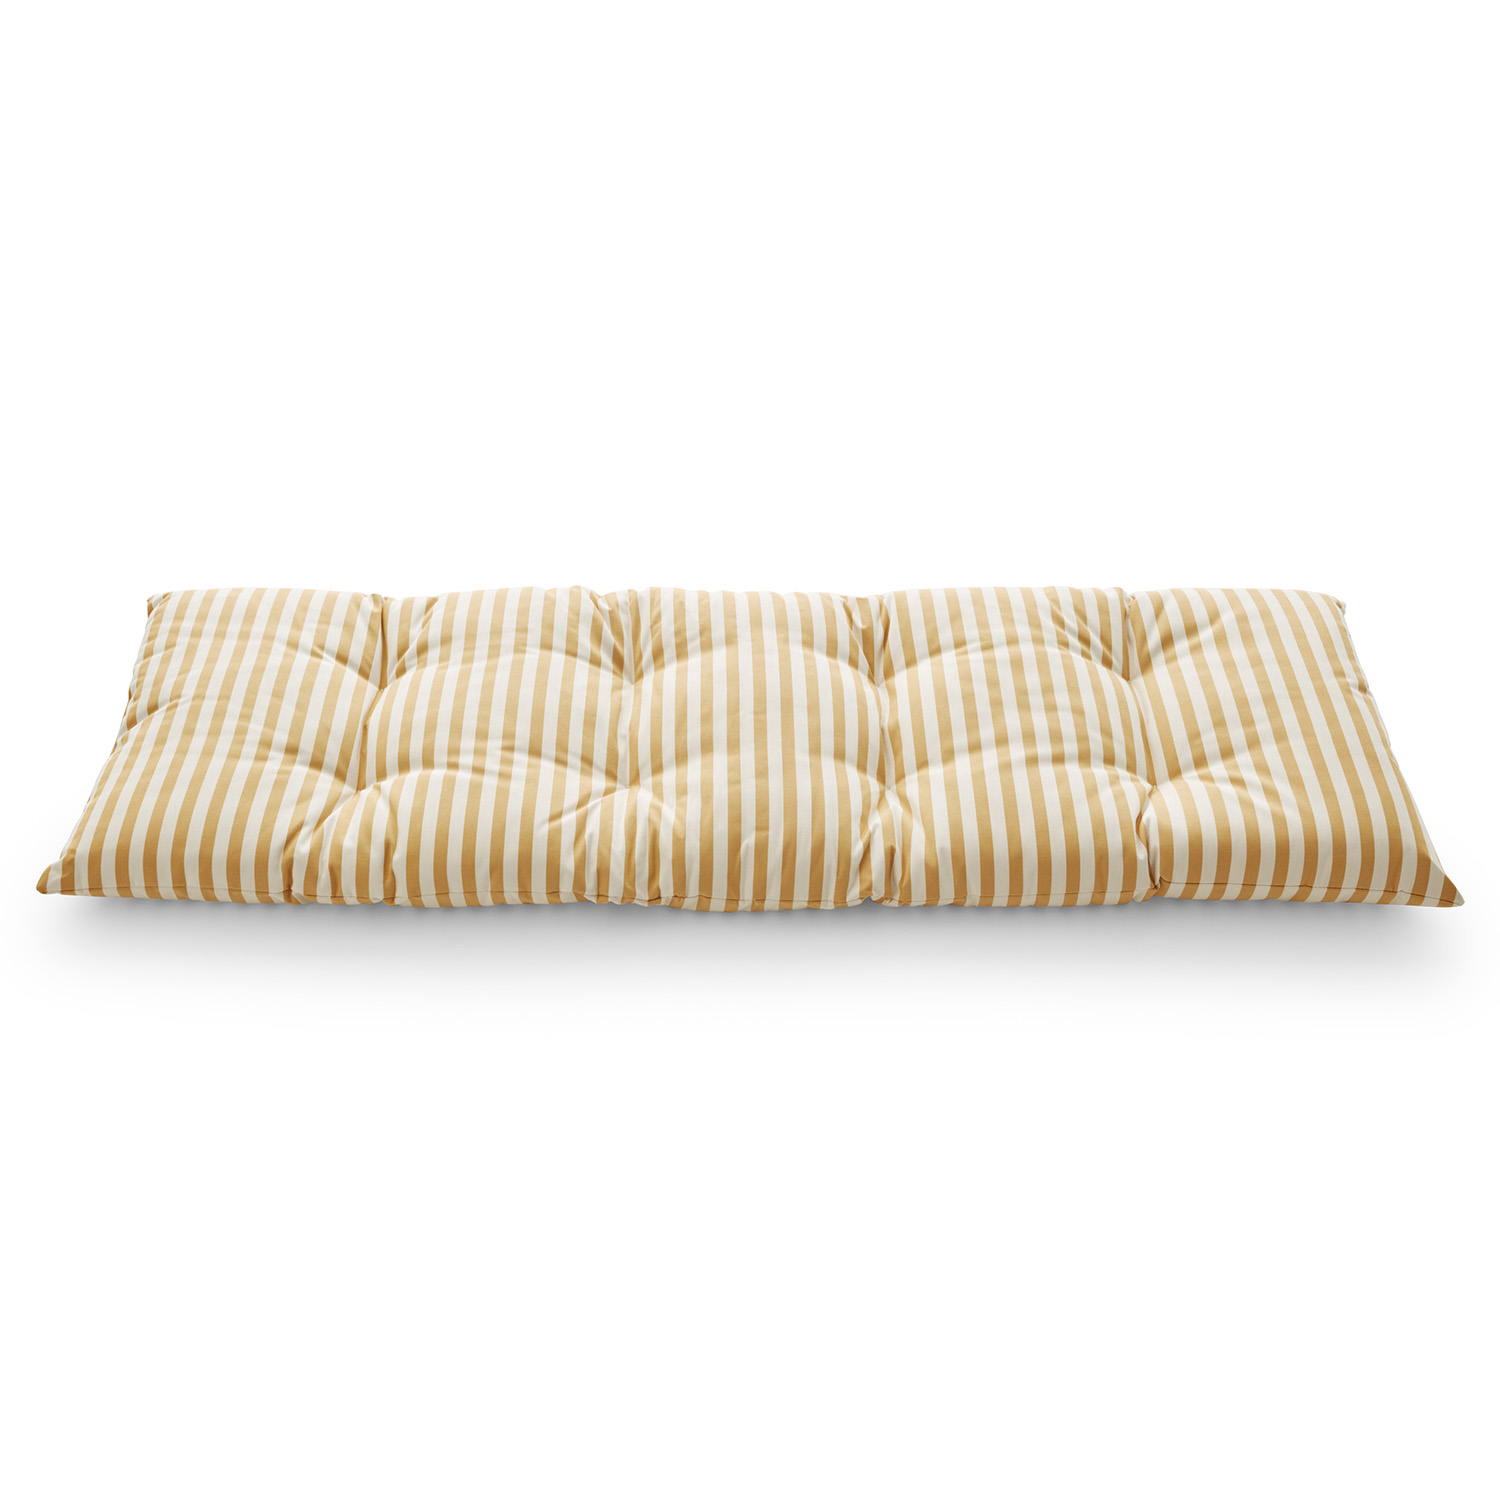 Skagerak Barriere Cushion 125X43 cm Golden Yellow Stripe